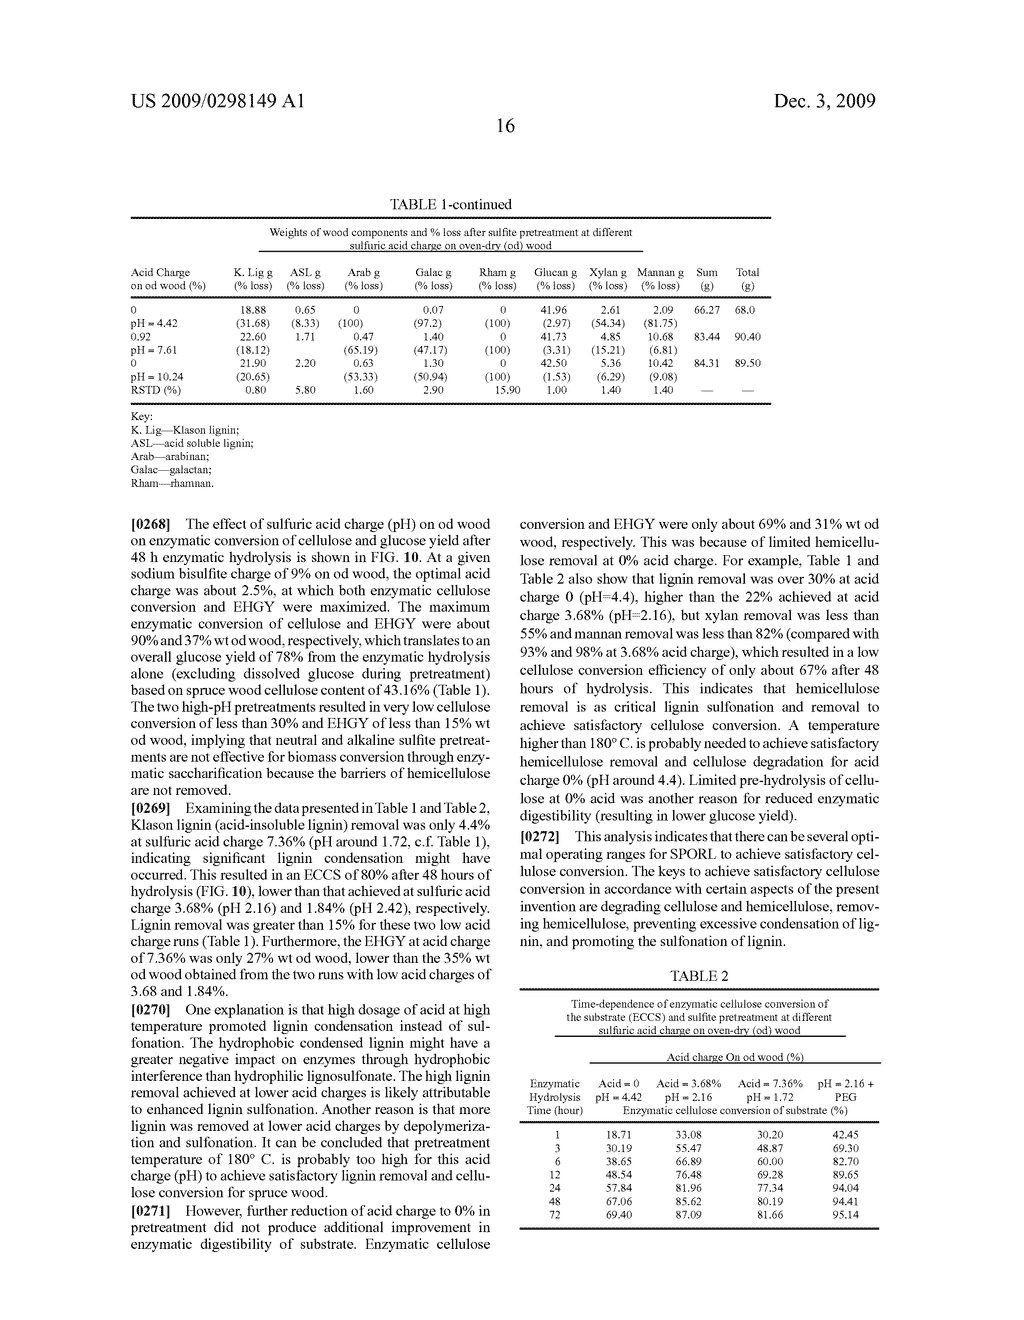 Sulfite Pretreatment For Biorefining Biomass - diagram, schematic, and image 56